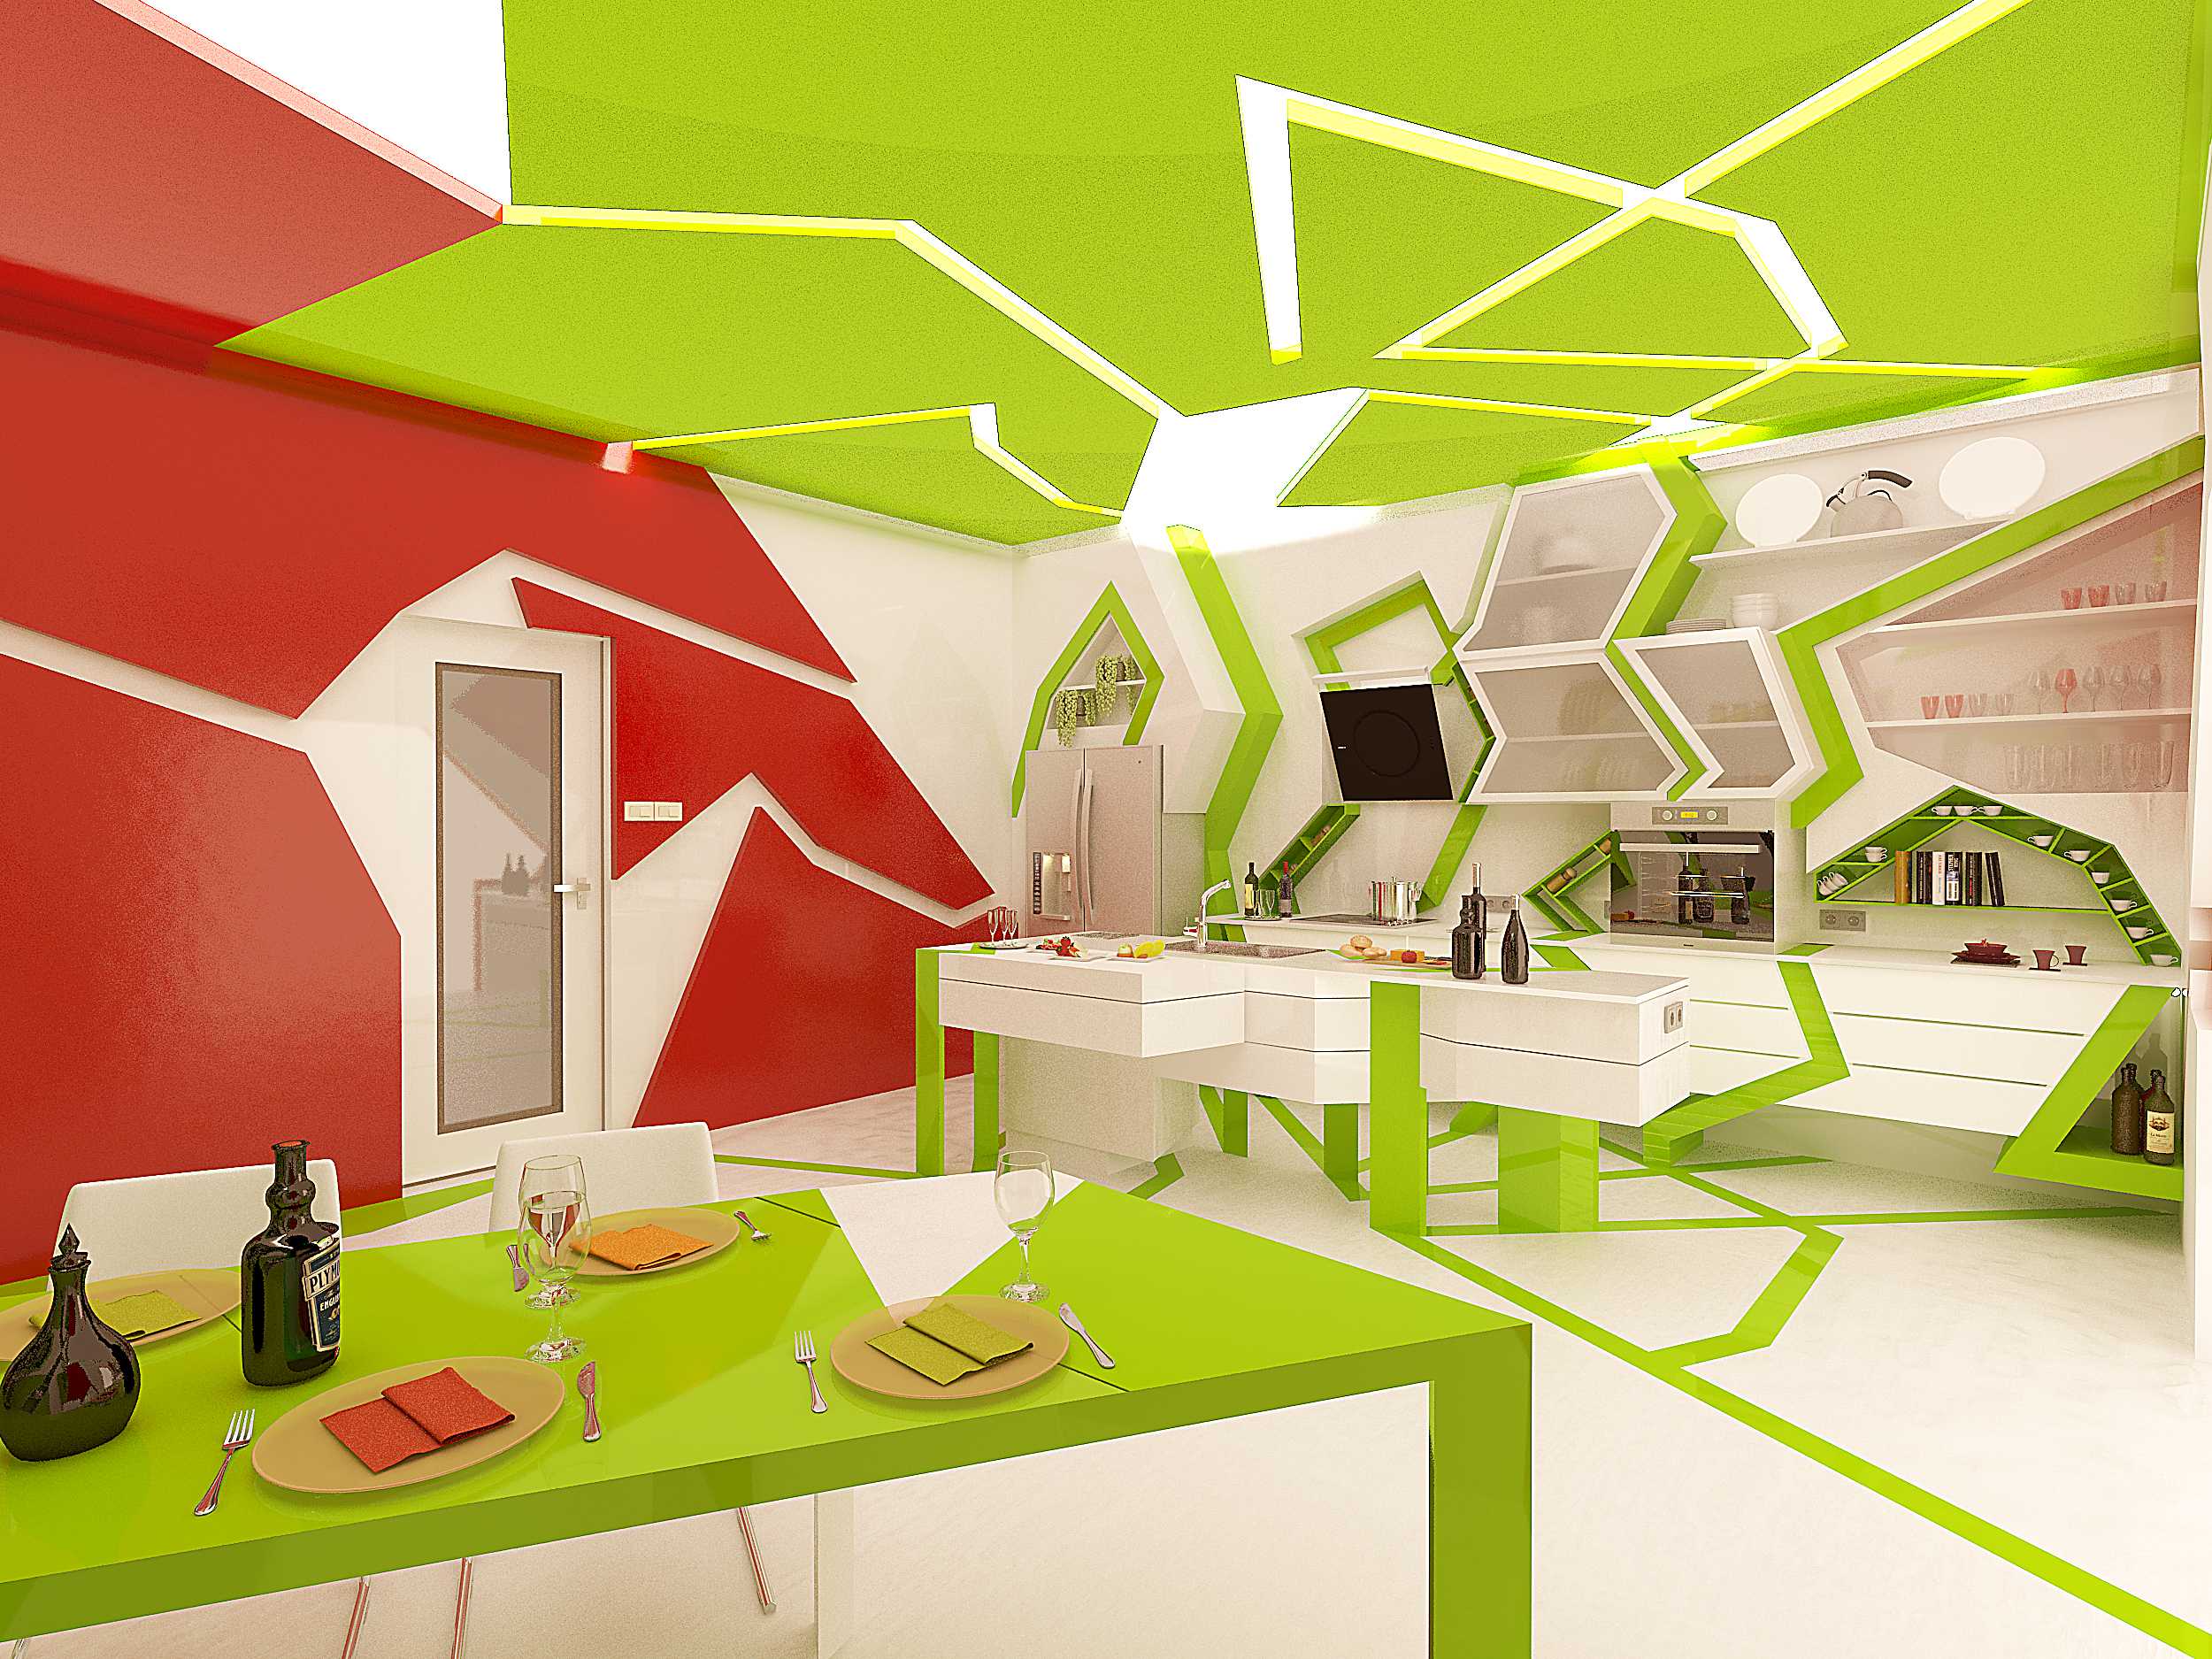 Артистическая комната. Суперграфика в интерьере. Кухня в стиле кубизм. Креативное пространство. Графический дизайн пространства.